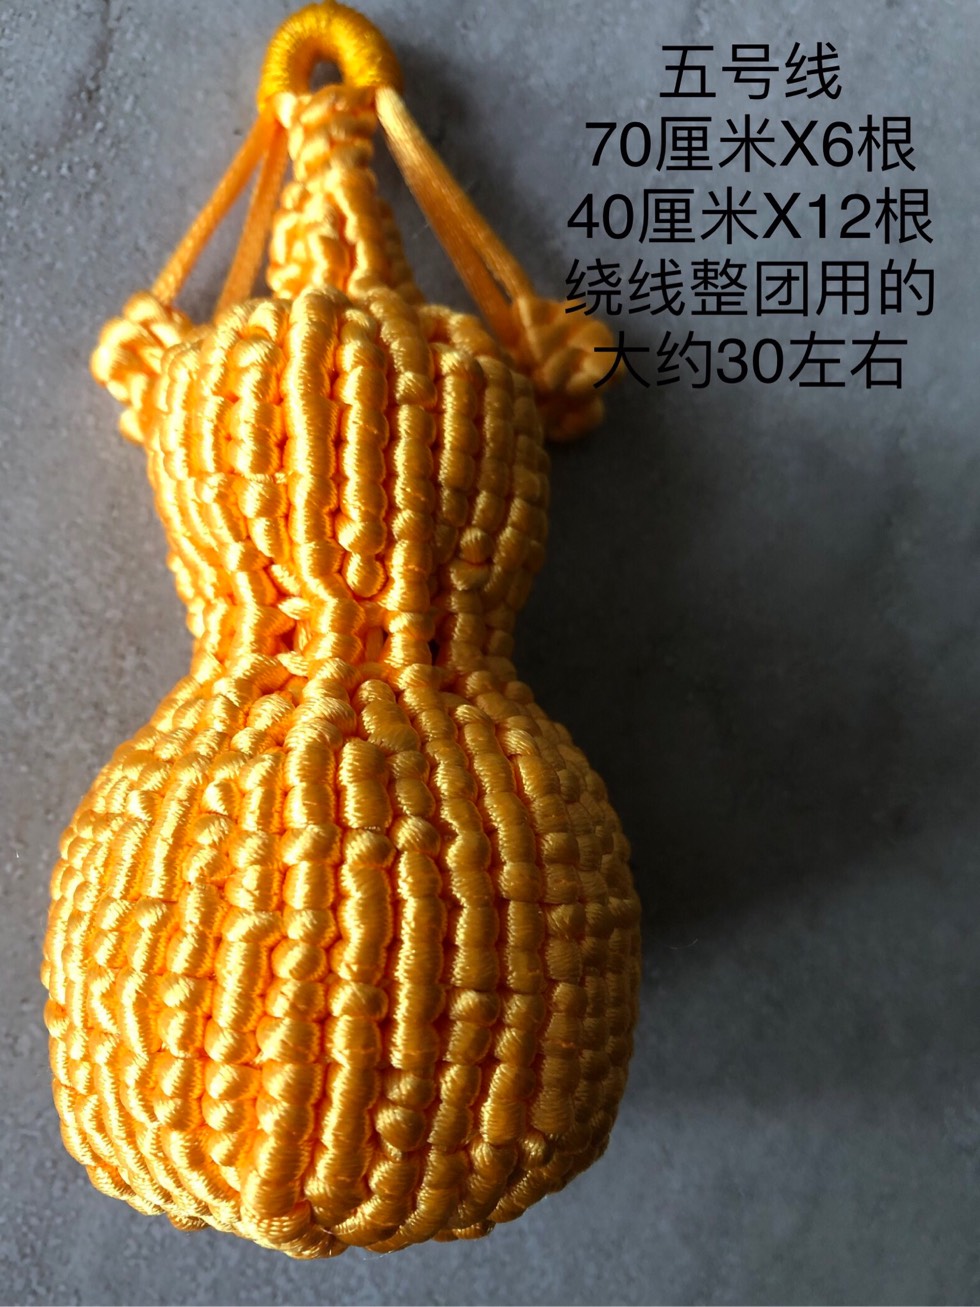 中国结论坛 葫芦 葫芦为什么不能送人,葫芦的风水作用,挂葫芦的禁忌,葫芦不能乱挂 作品展示 185748i48h5558zcjz8h53